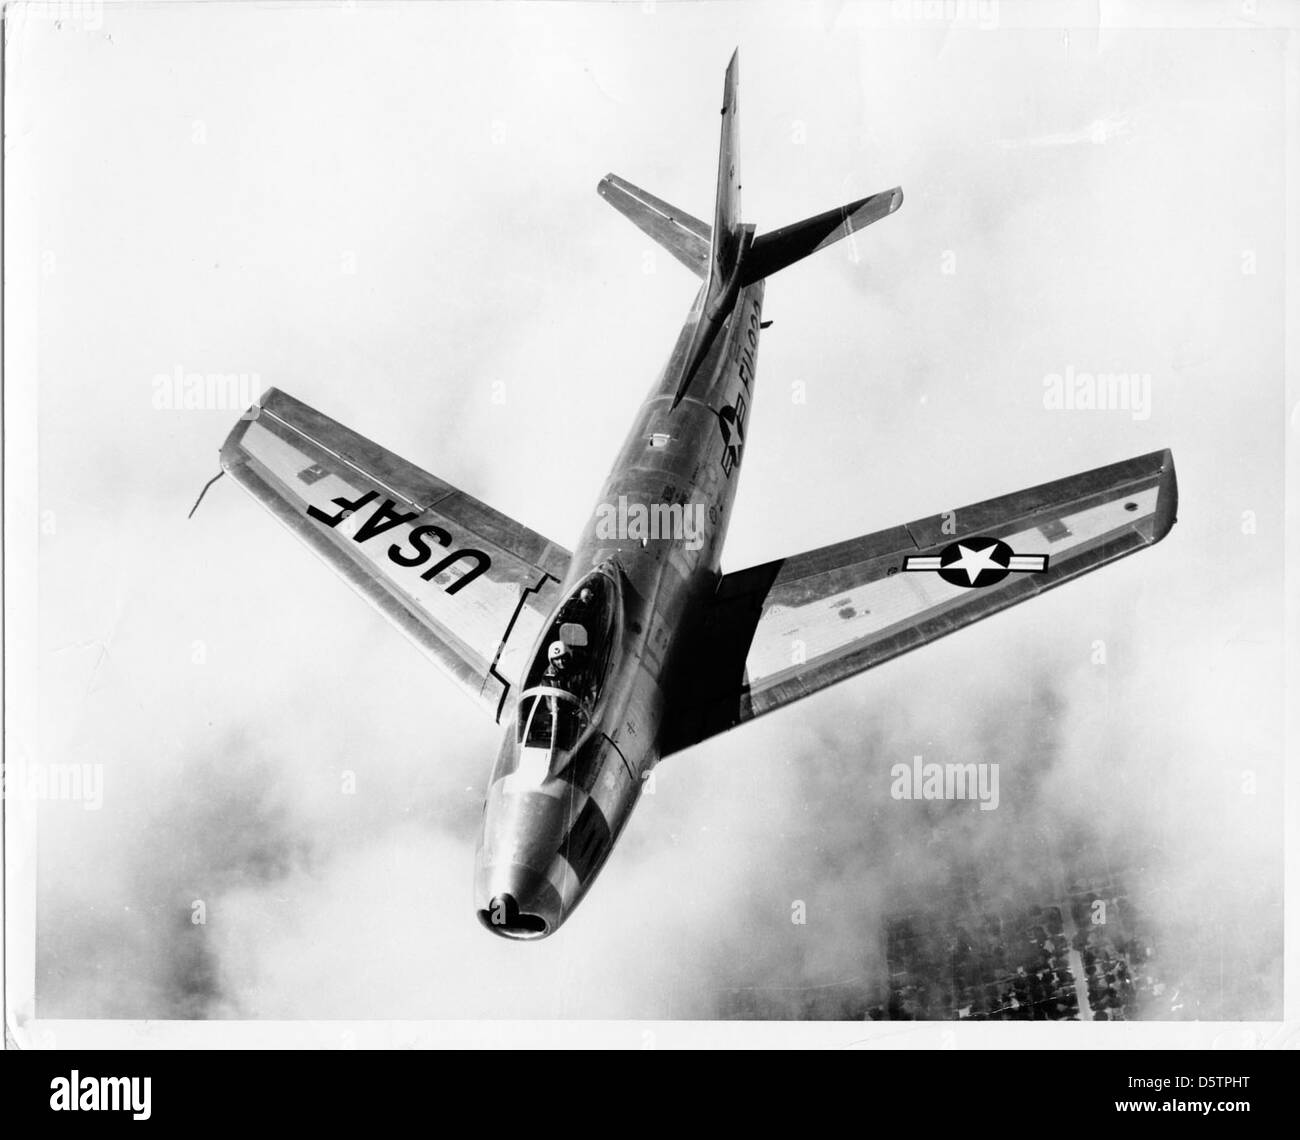 North American F-86F "Sabre" Stockfoto